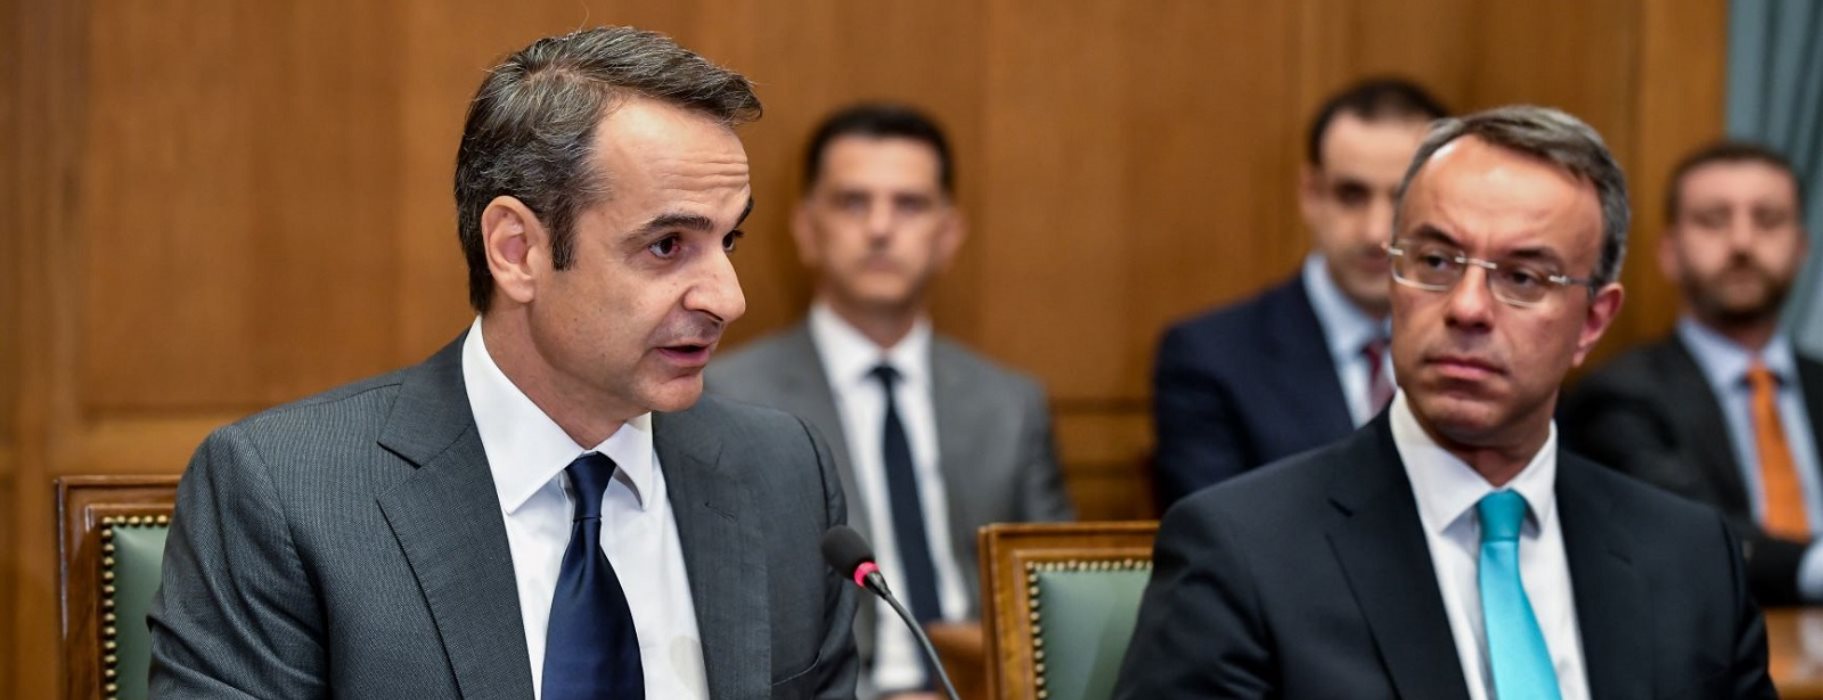 Επικοινωνία Κ.Μητσοτάκη – Χ.Σταϊκούρα για Eurogroup: Επιμένει για ευρωομόλογο η Ελλάδα